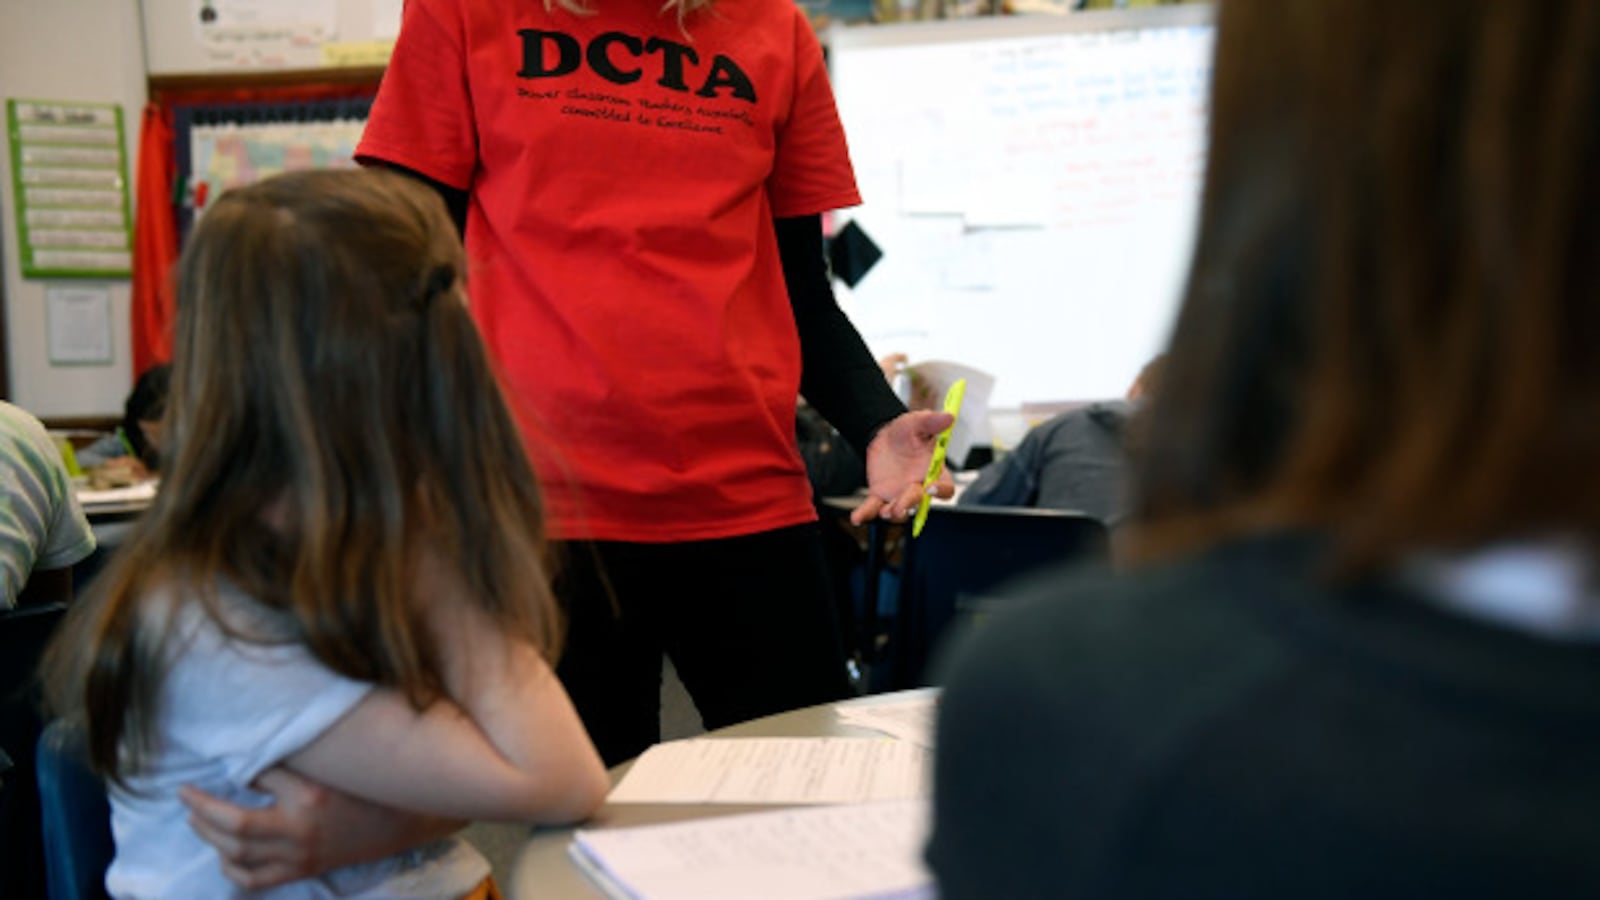 A teacher wears a Denver Classroom Teachers Association T-shirt in class during the strike.